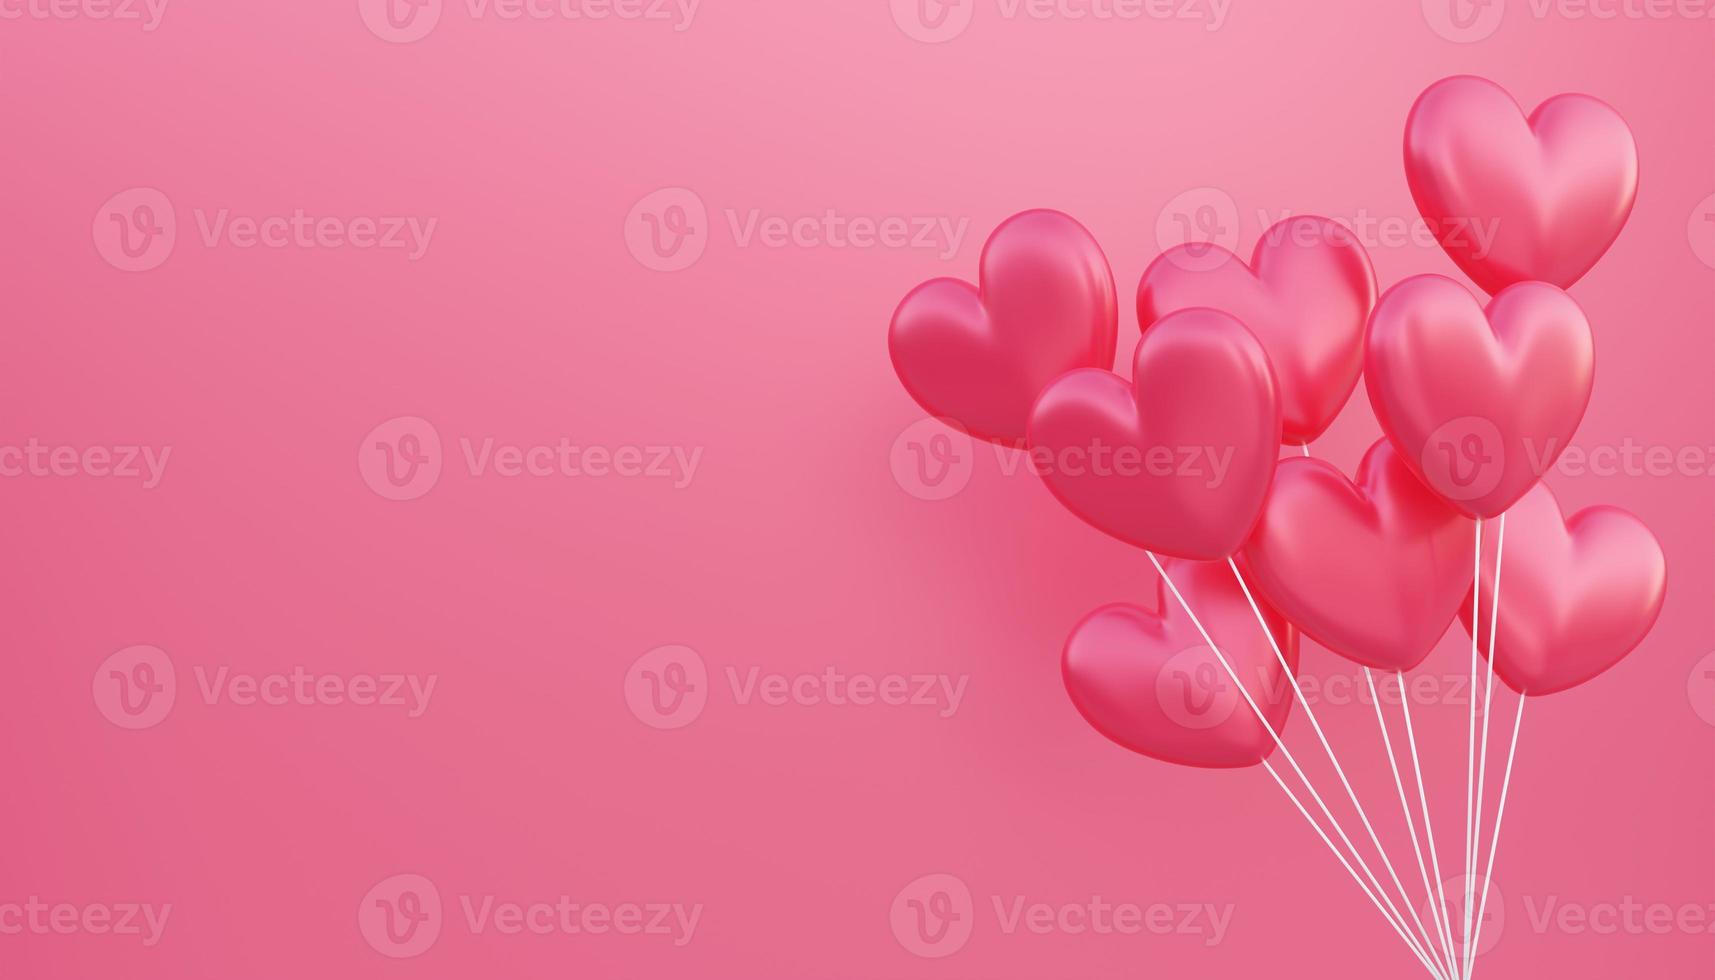 dia dos namorados, fundo do conceito de amor, vermelho 3d buquê de balões em forma de coração flutuando foto